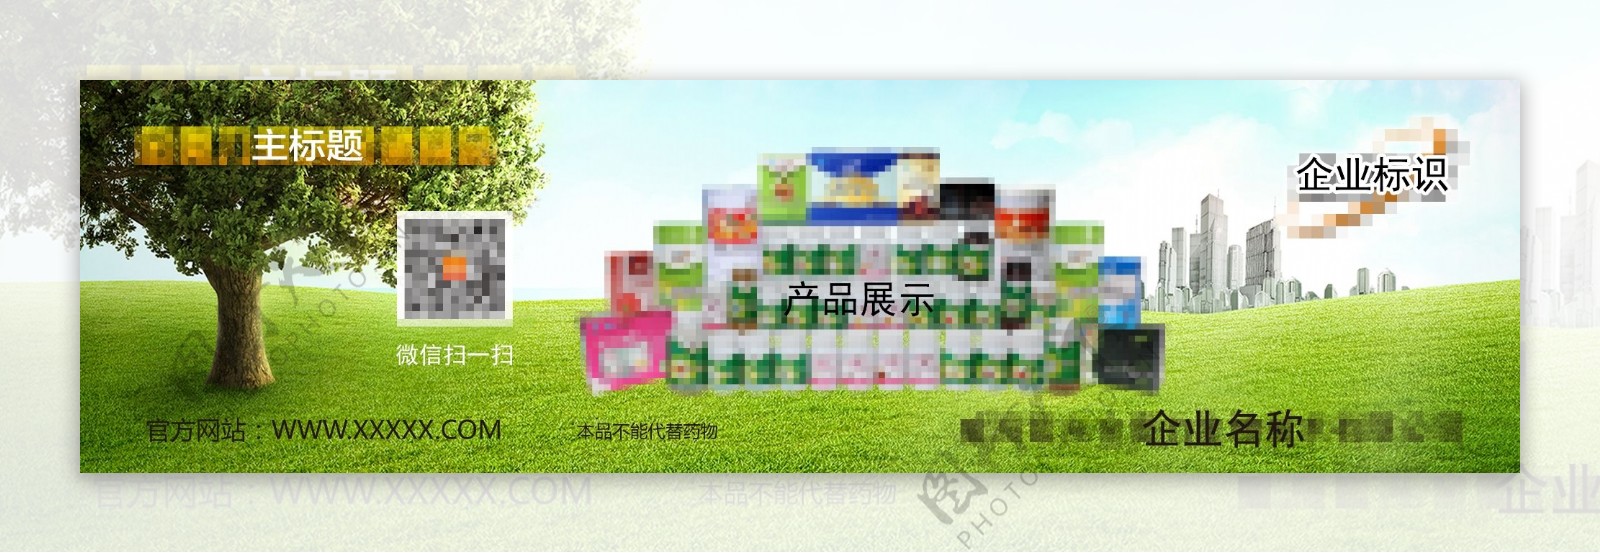 绿色健康环保产品海报展架